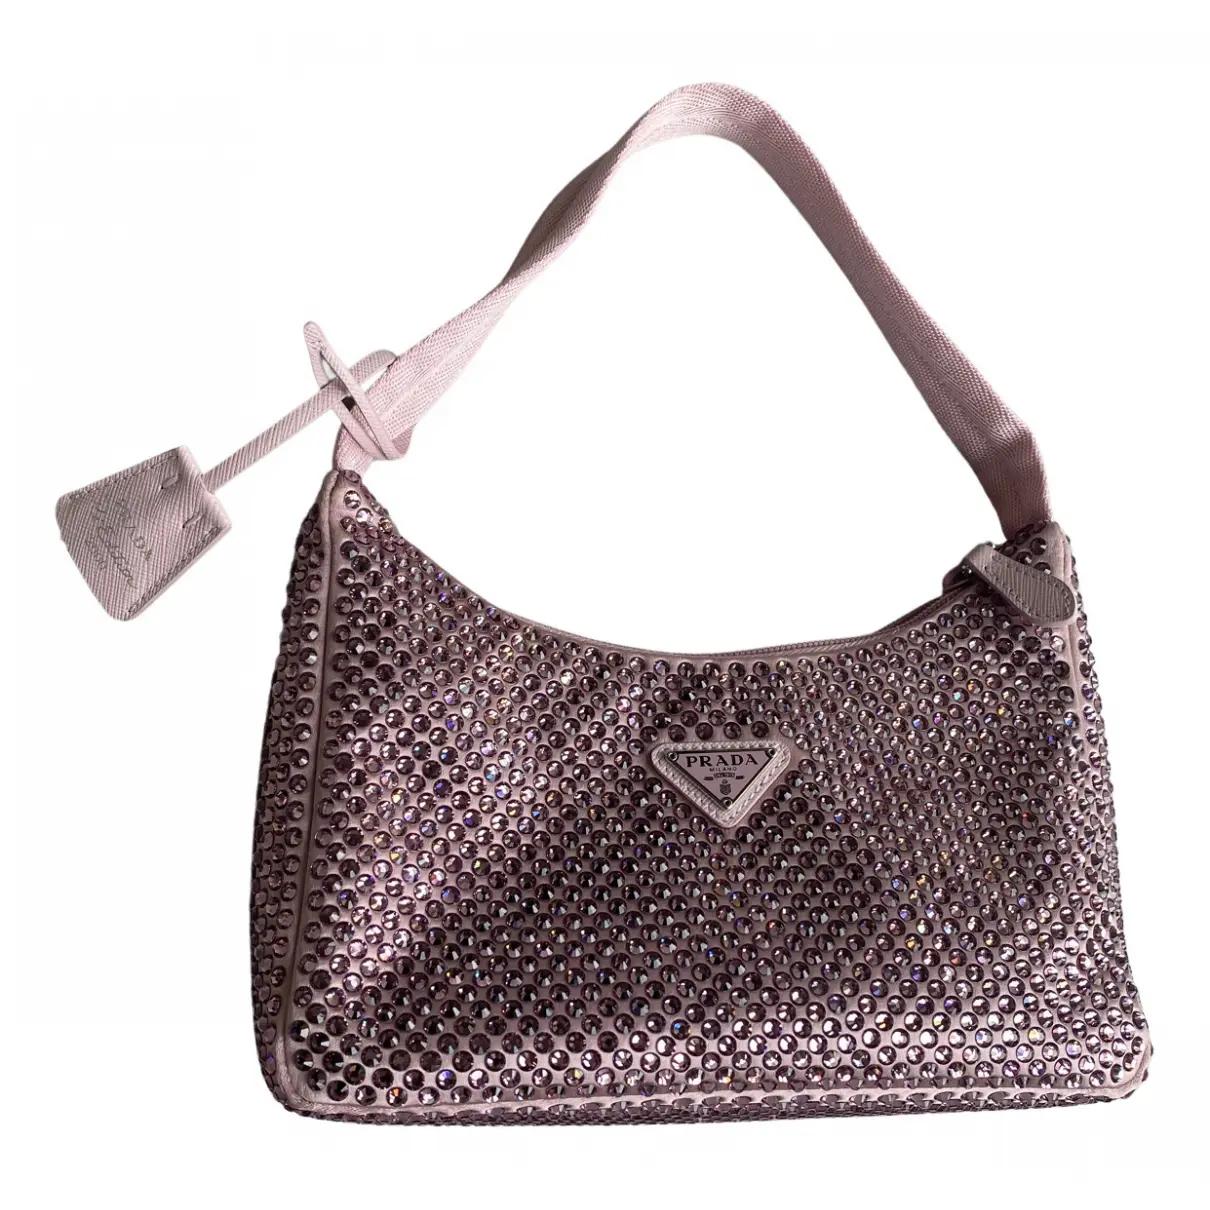 Re-Edition 2000 glitter handbag Prada